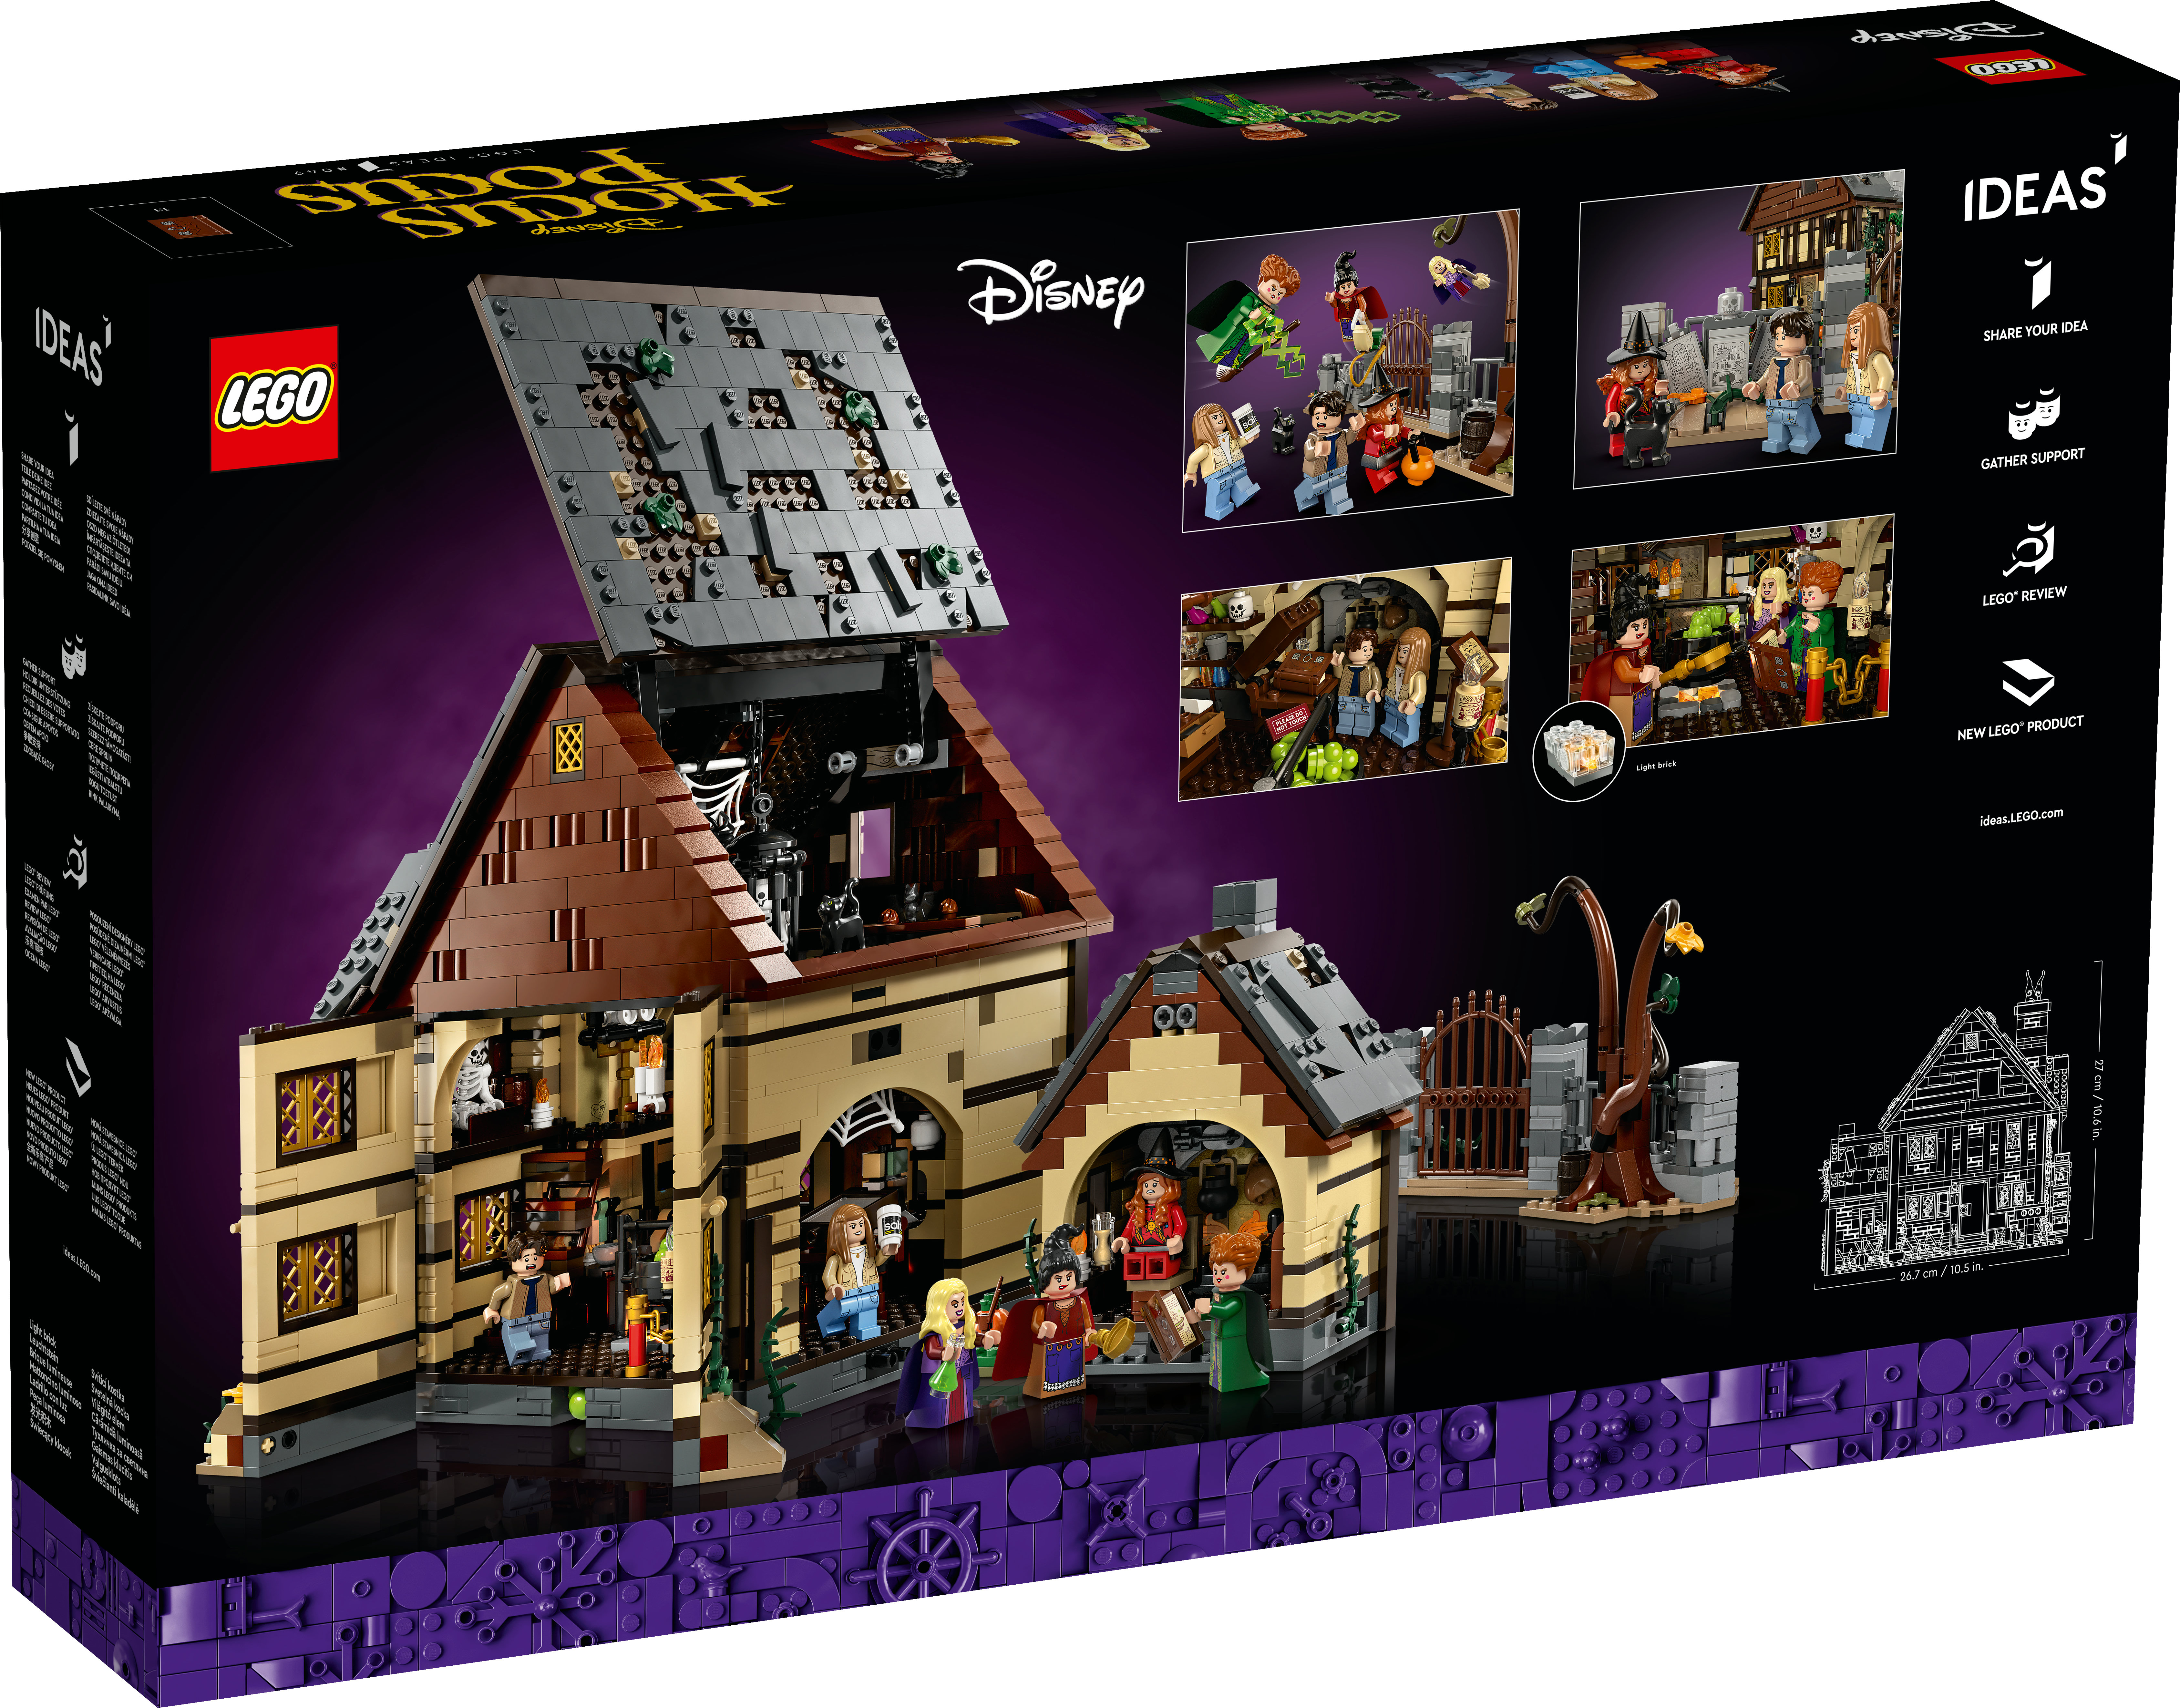 LEGO Ideas 21341 Disney Hocus Pocus Das Hexenhaus der Sanderson Schwestern